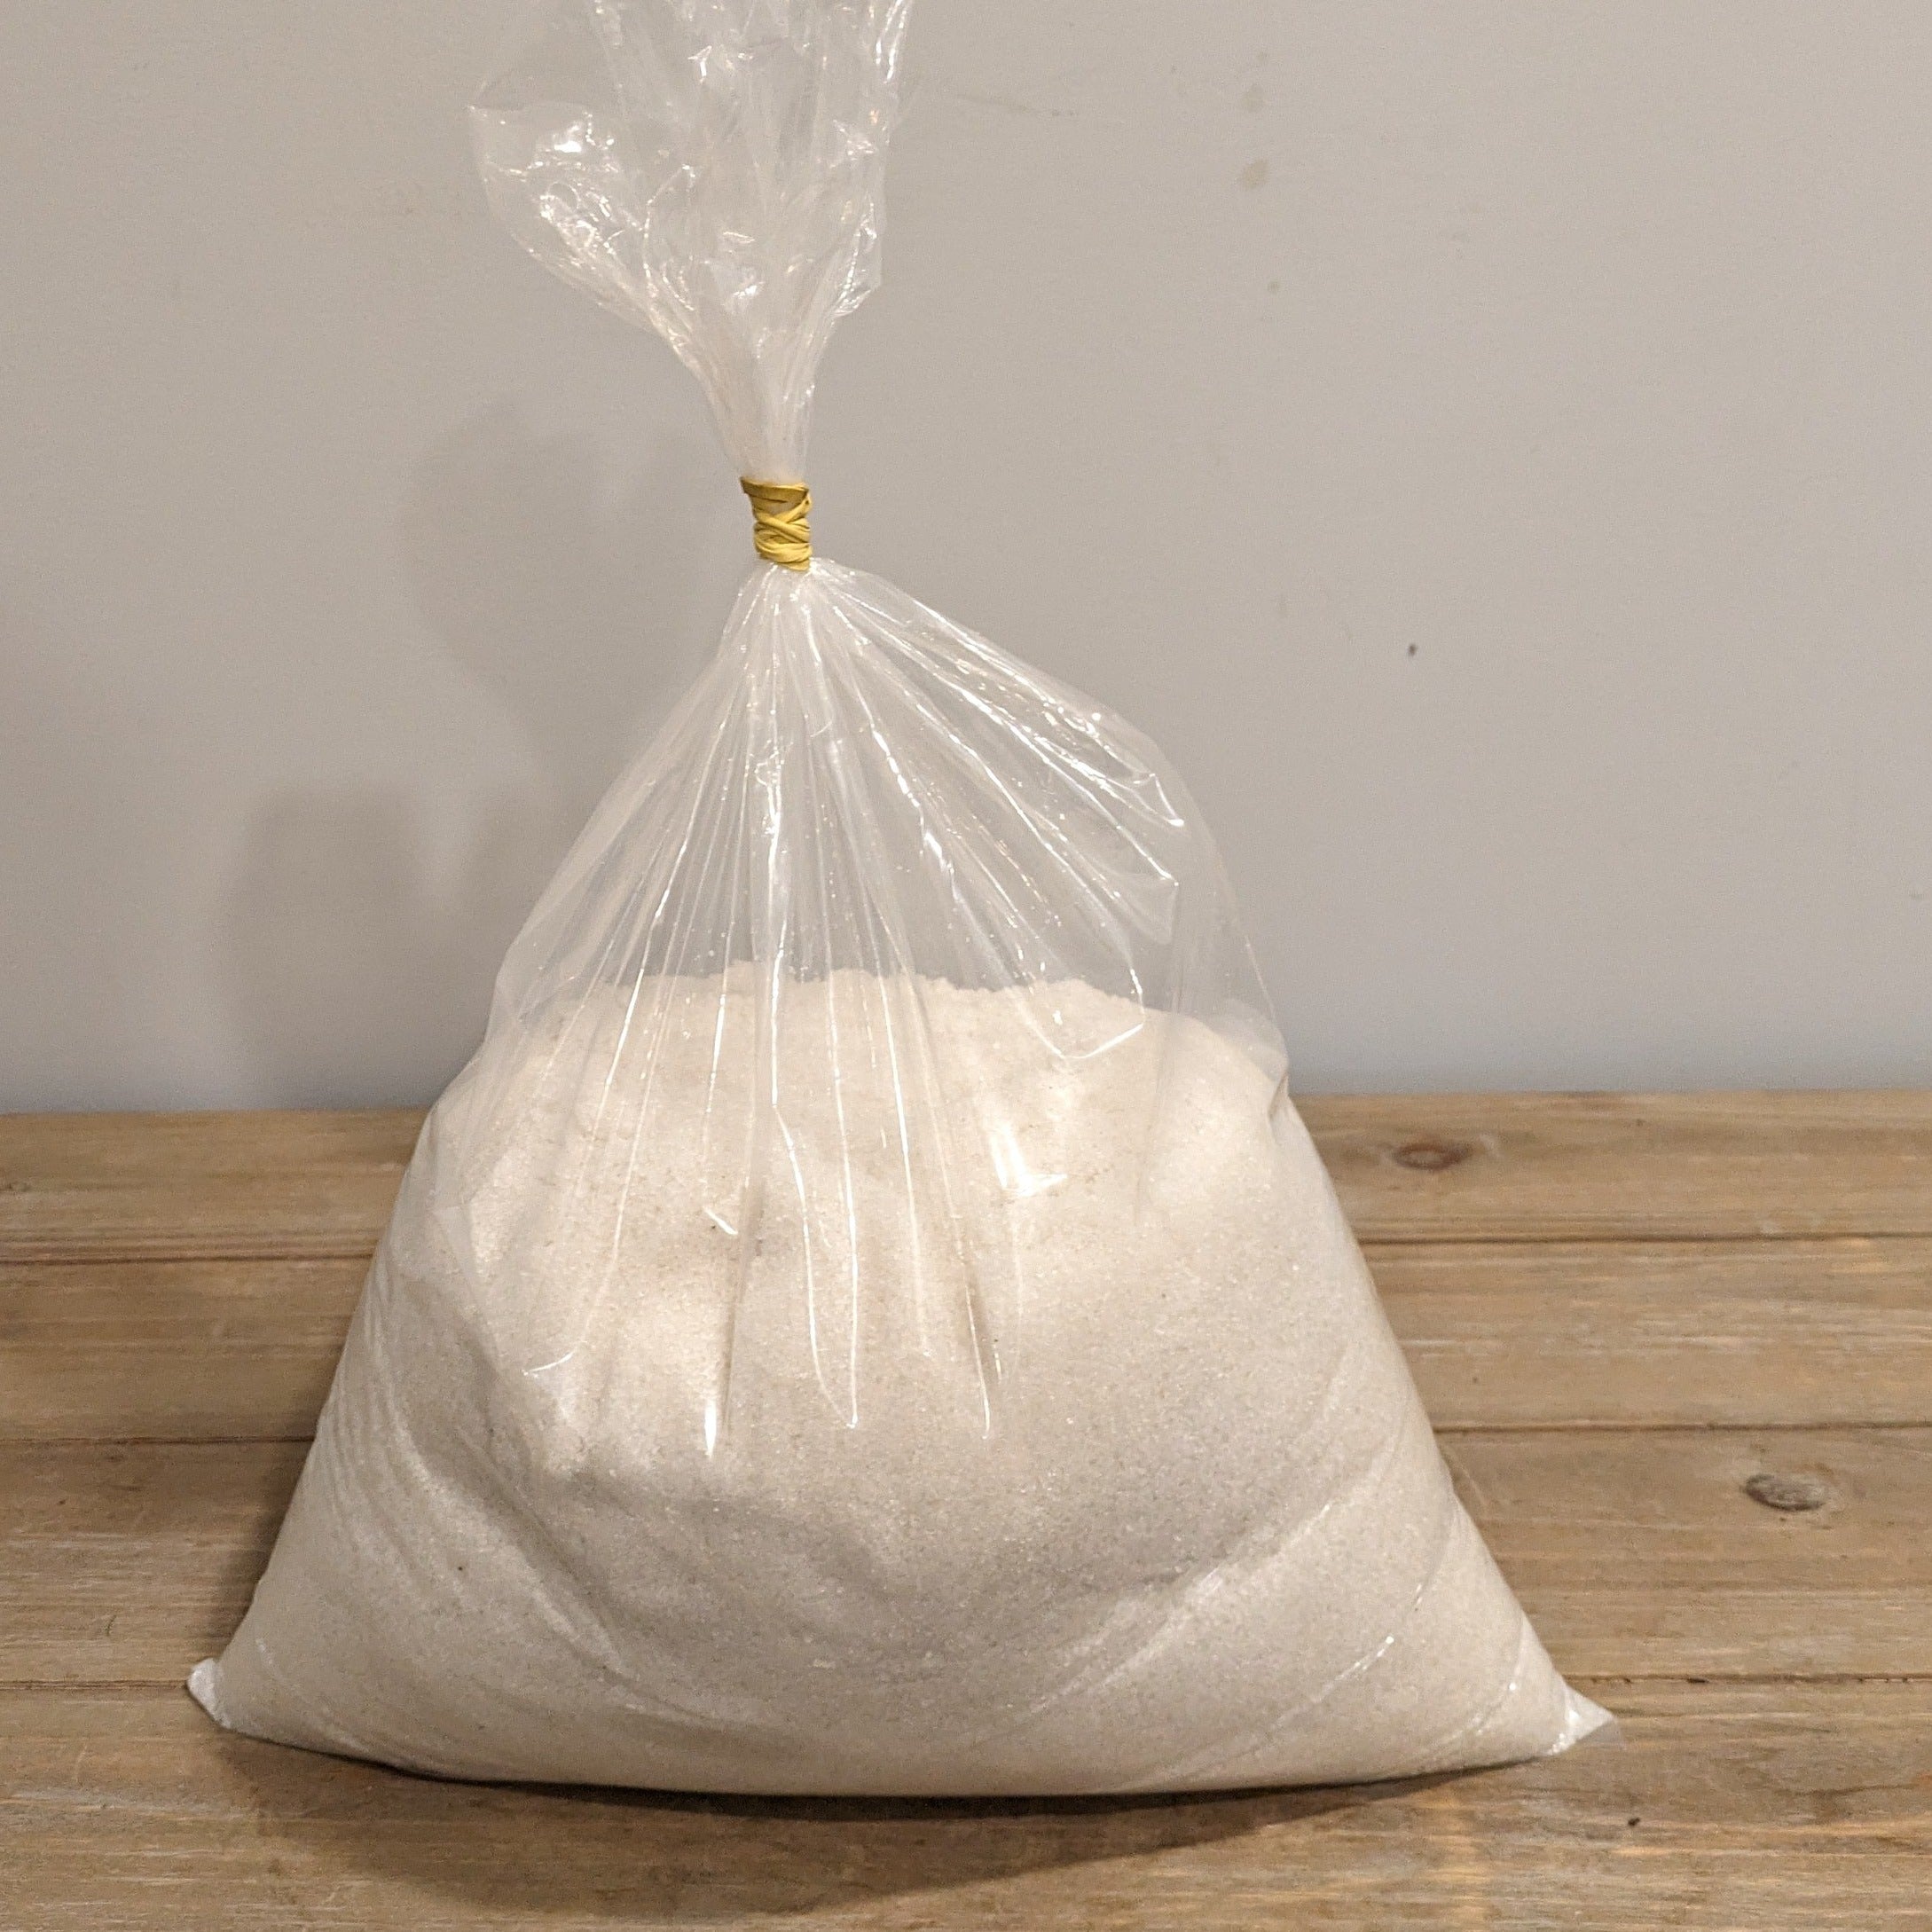 10lb bag of pond salt. Safe for fish